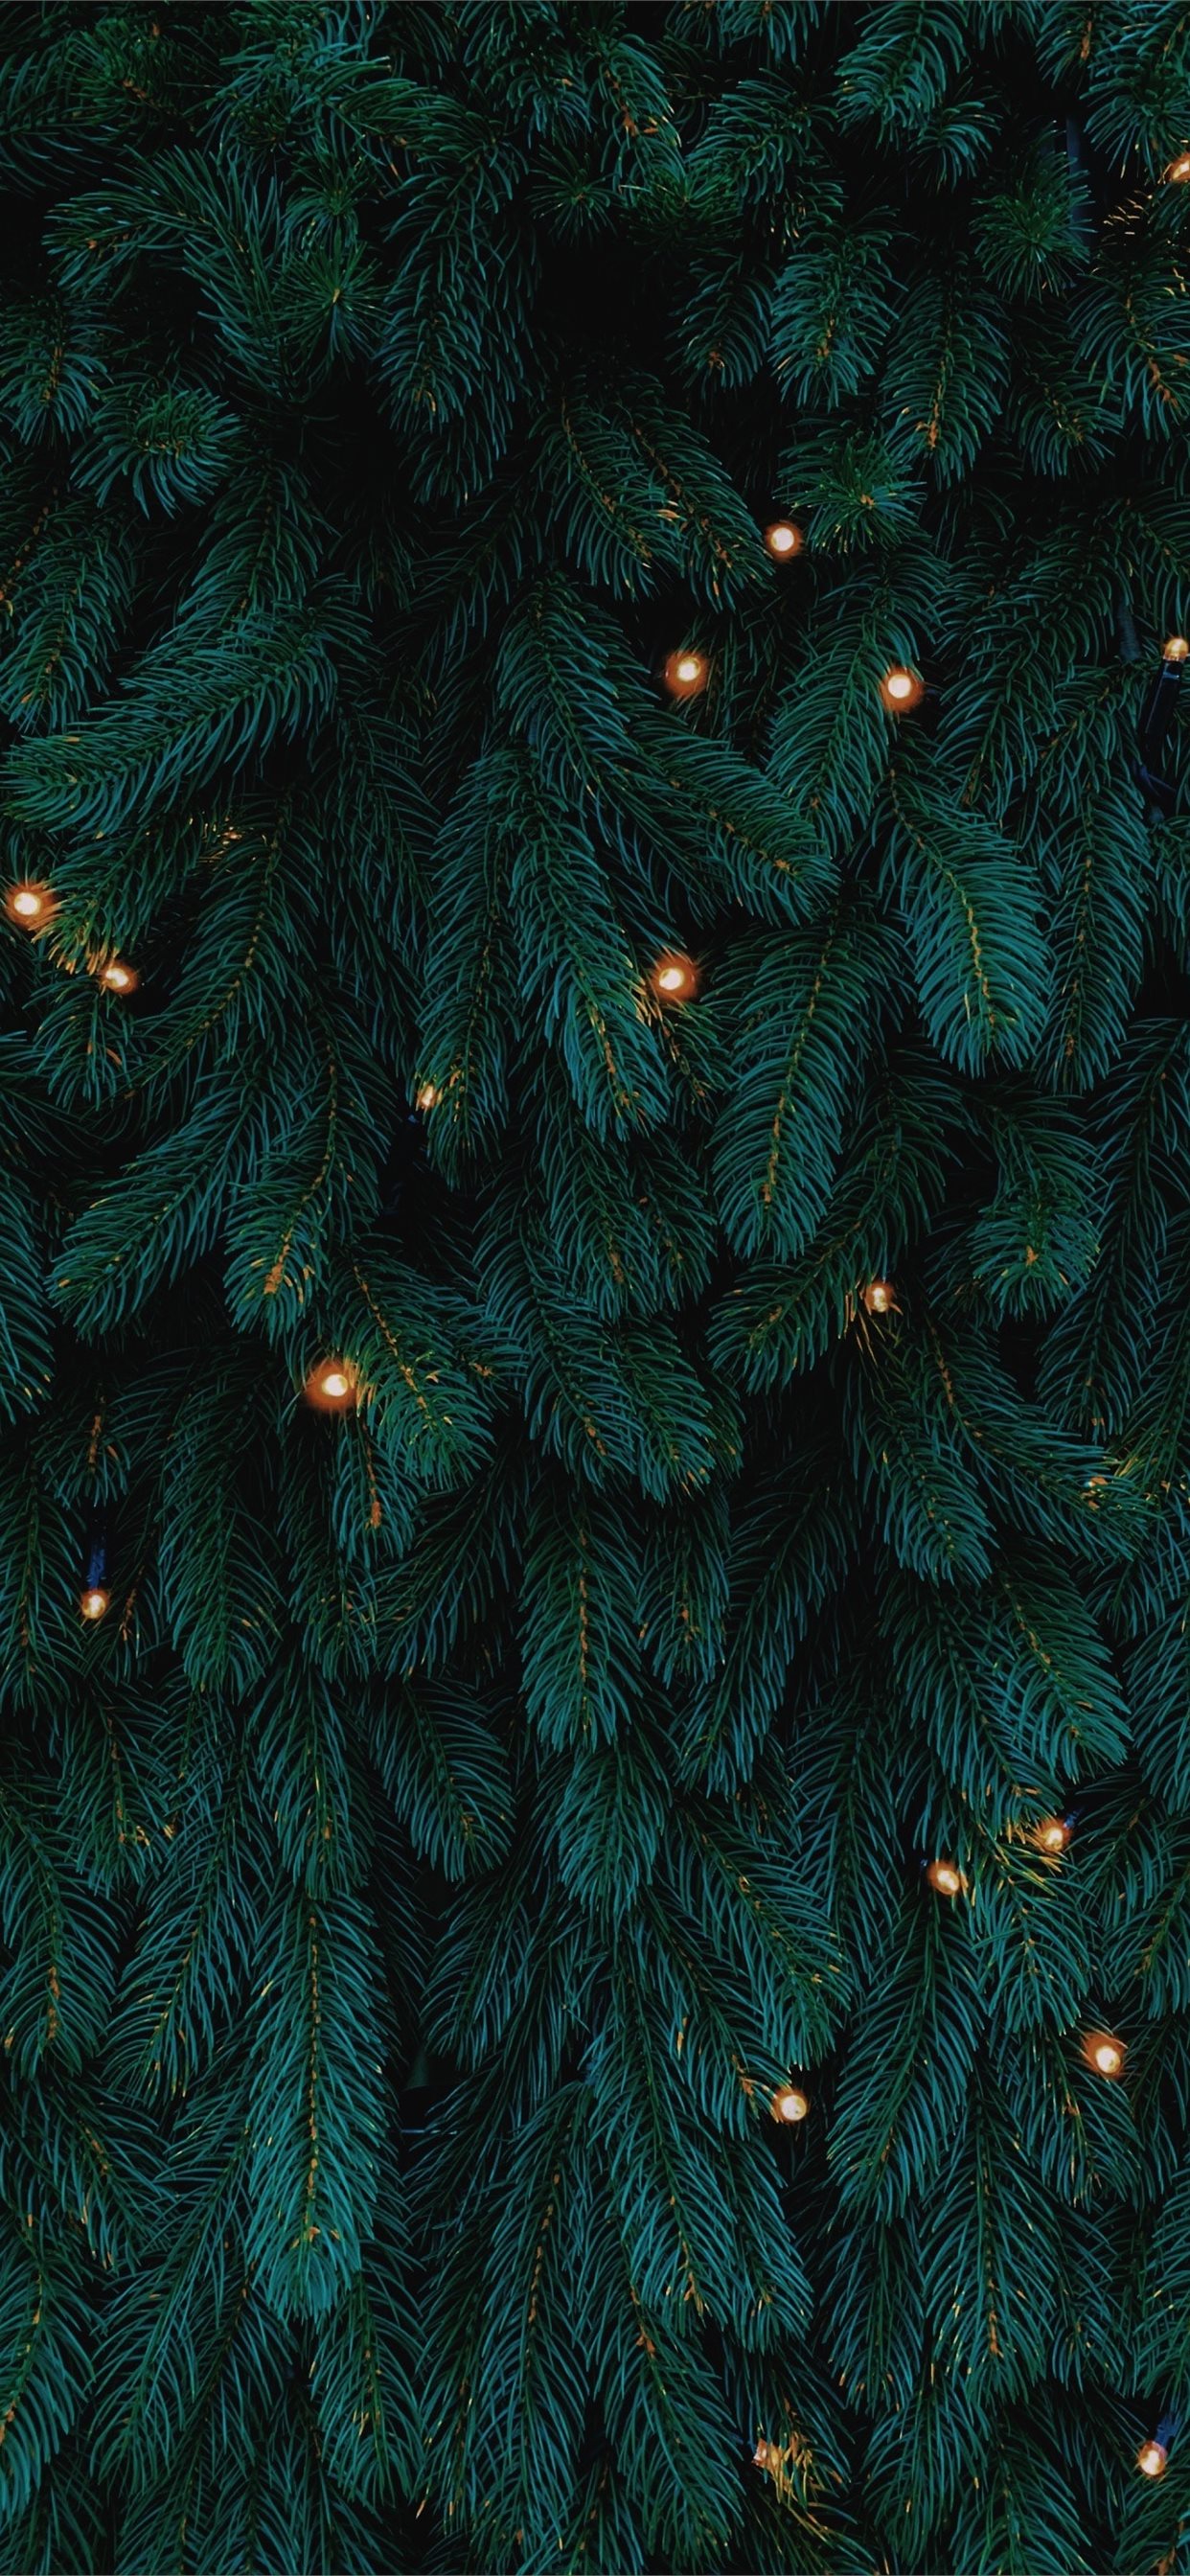 Đẹp và lung linh là những từ có thể dùng để miêu tả hình nền cây thông màu xanh Giáng Sinh này. Sự kết hợp giữa màu xanh và đỏ sẽ chắc chắn mang đến cho bạn một không gian ấn tượng đậm chất lễ hội.